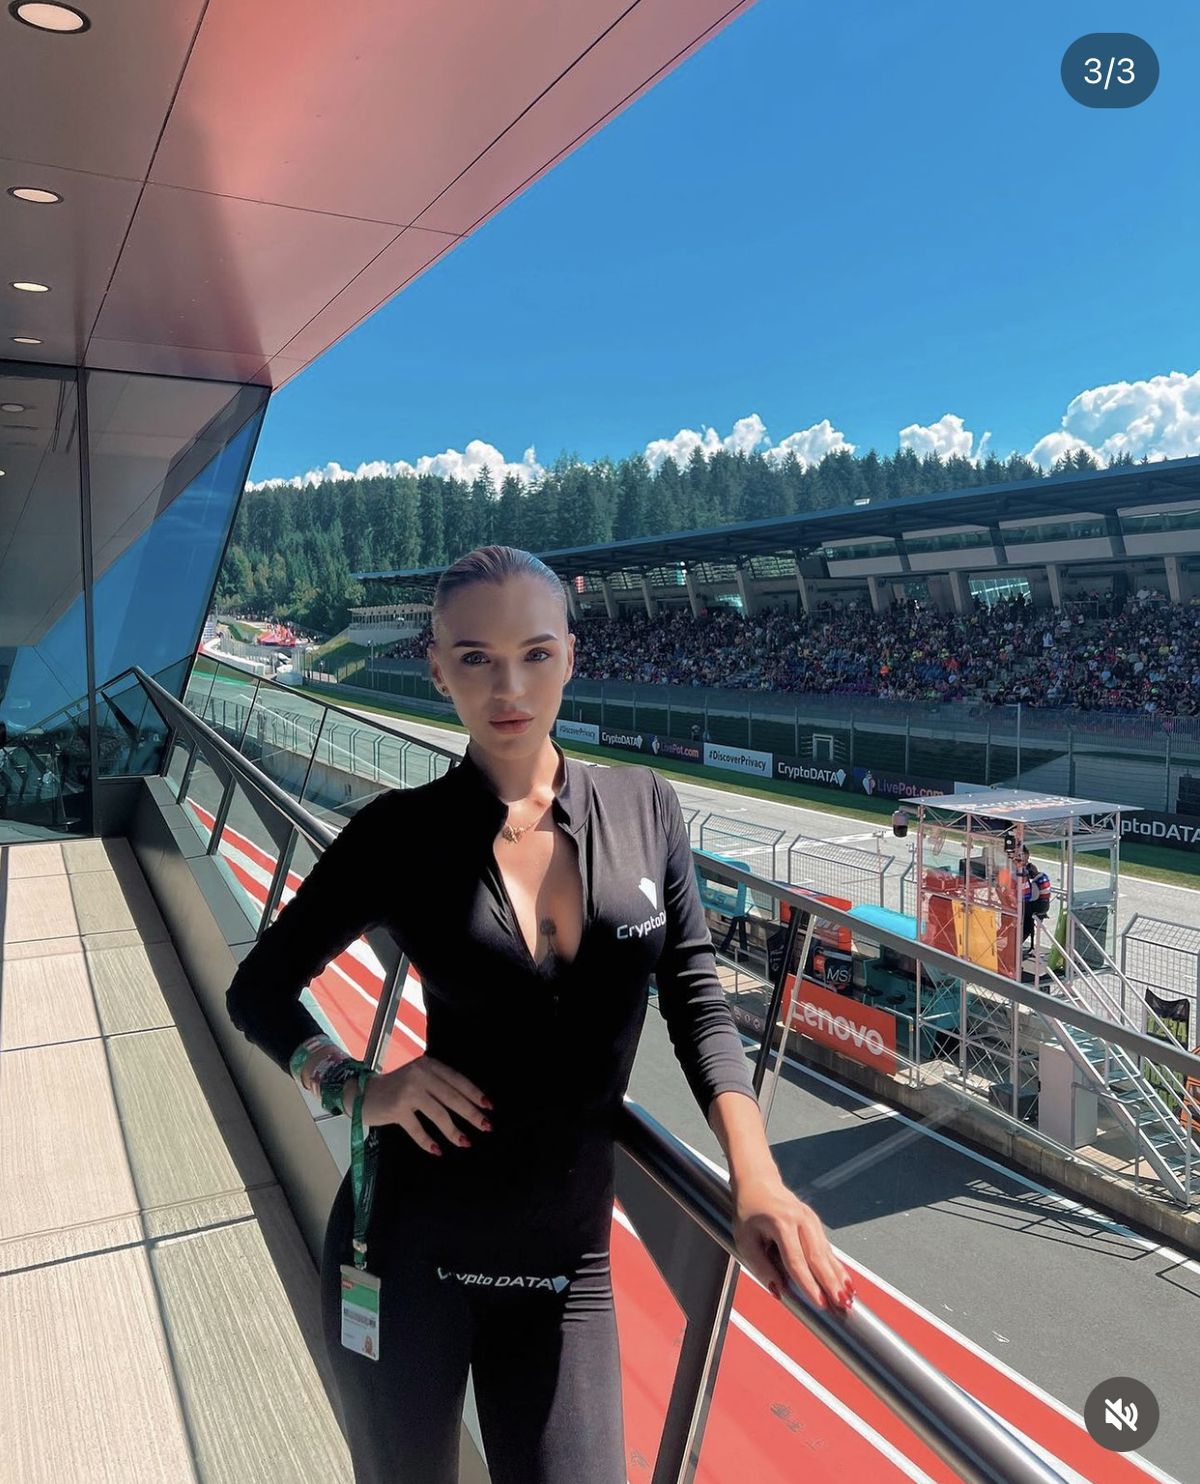 Ioana-Adriana Mitran face ravagii pe circuitul fierbinte din Moto GP » Escapadă în Indonezia pentru o vacanță exotică